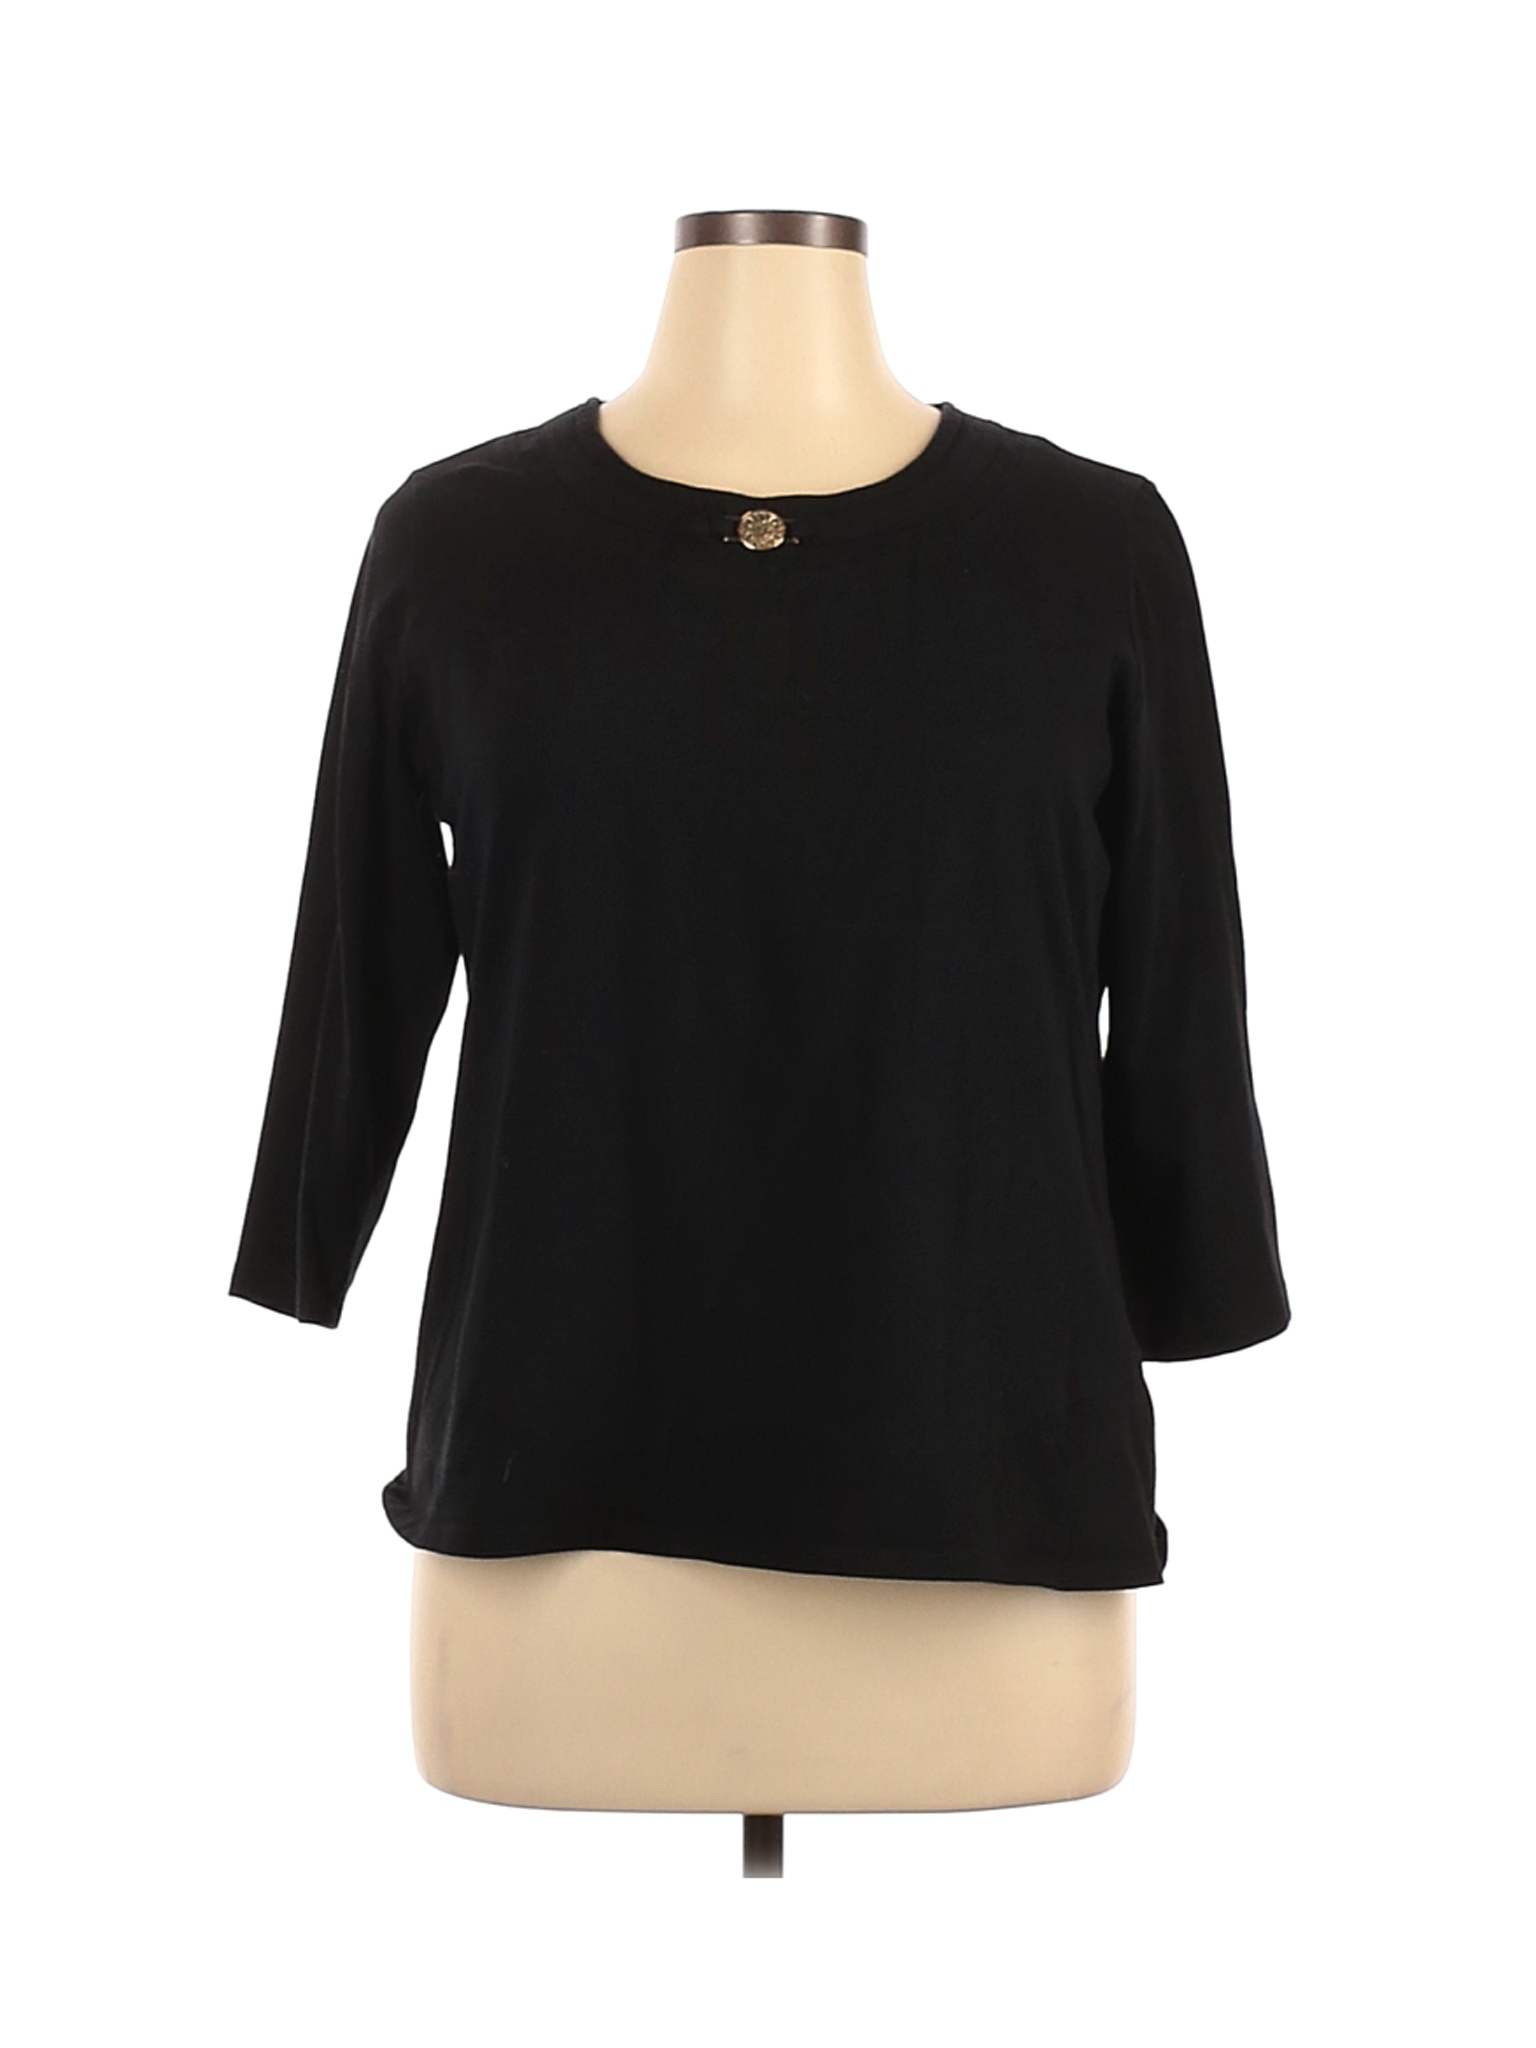 Anne Klein Women Black 3/4 Sleeve Top XL | eBay